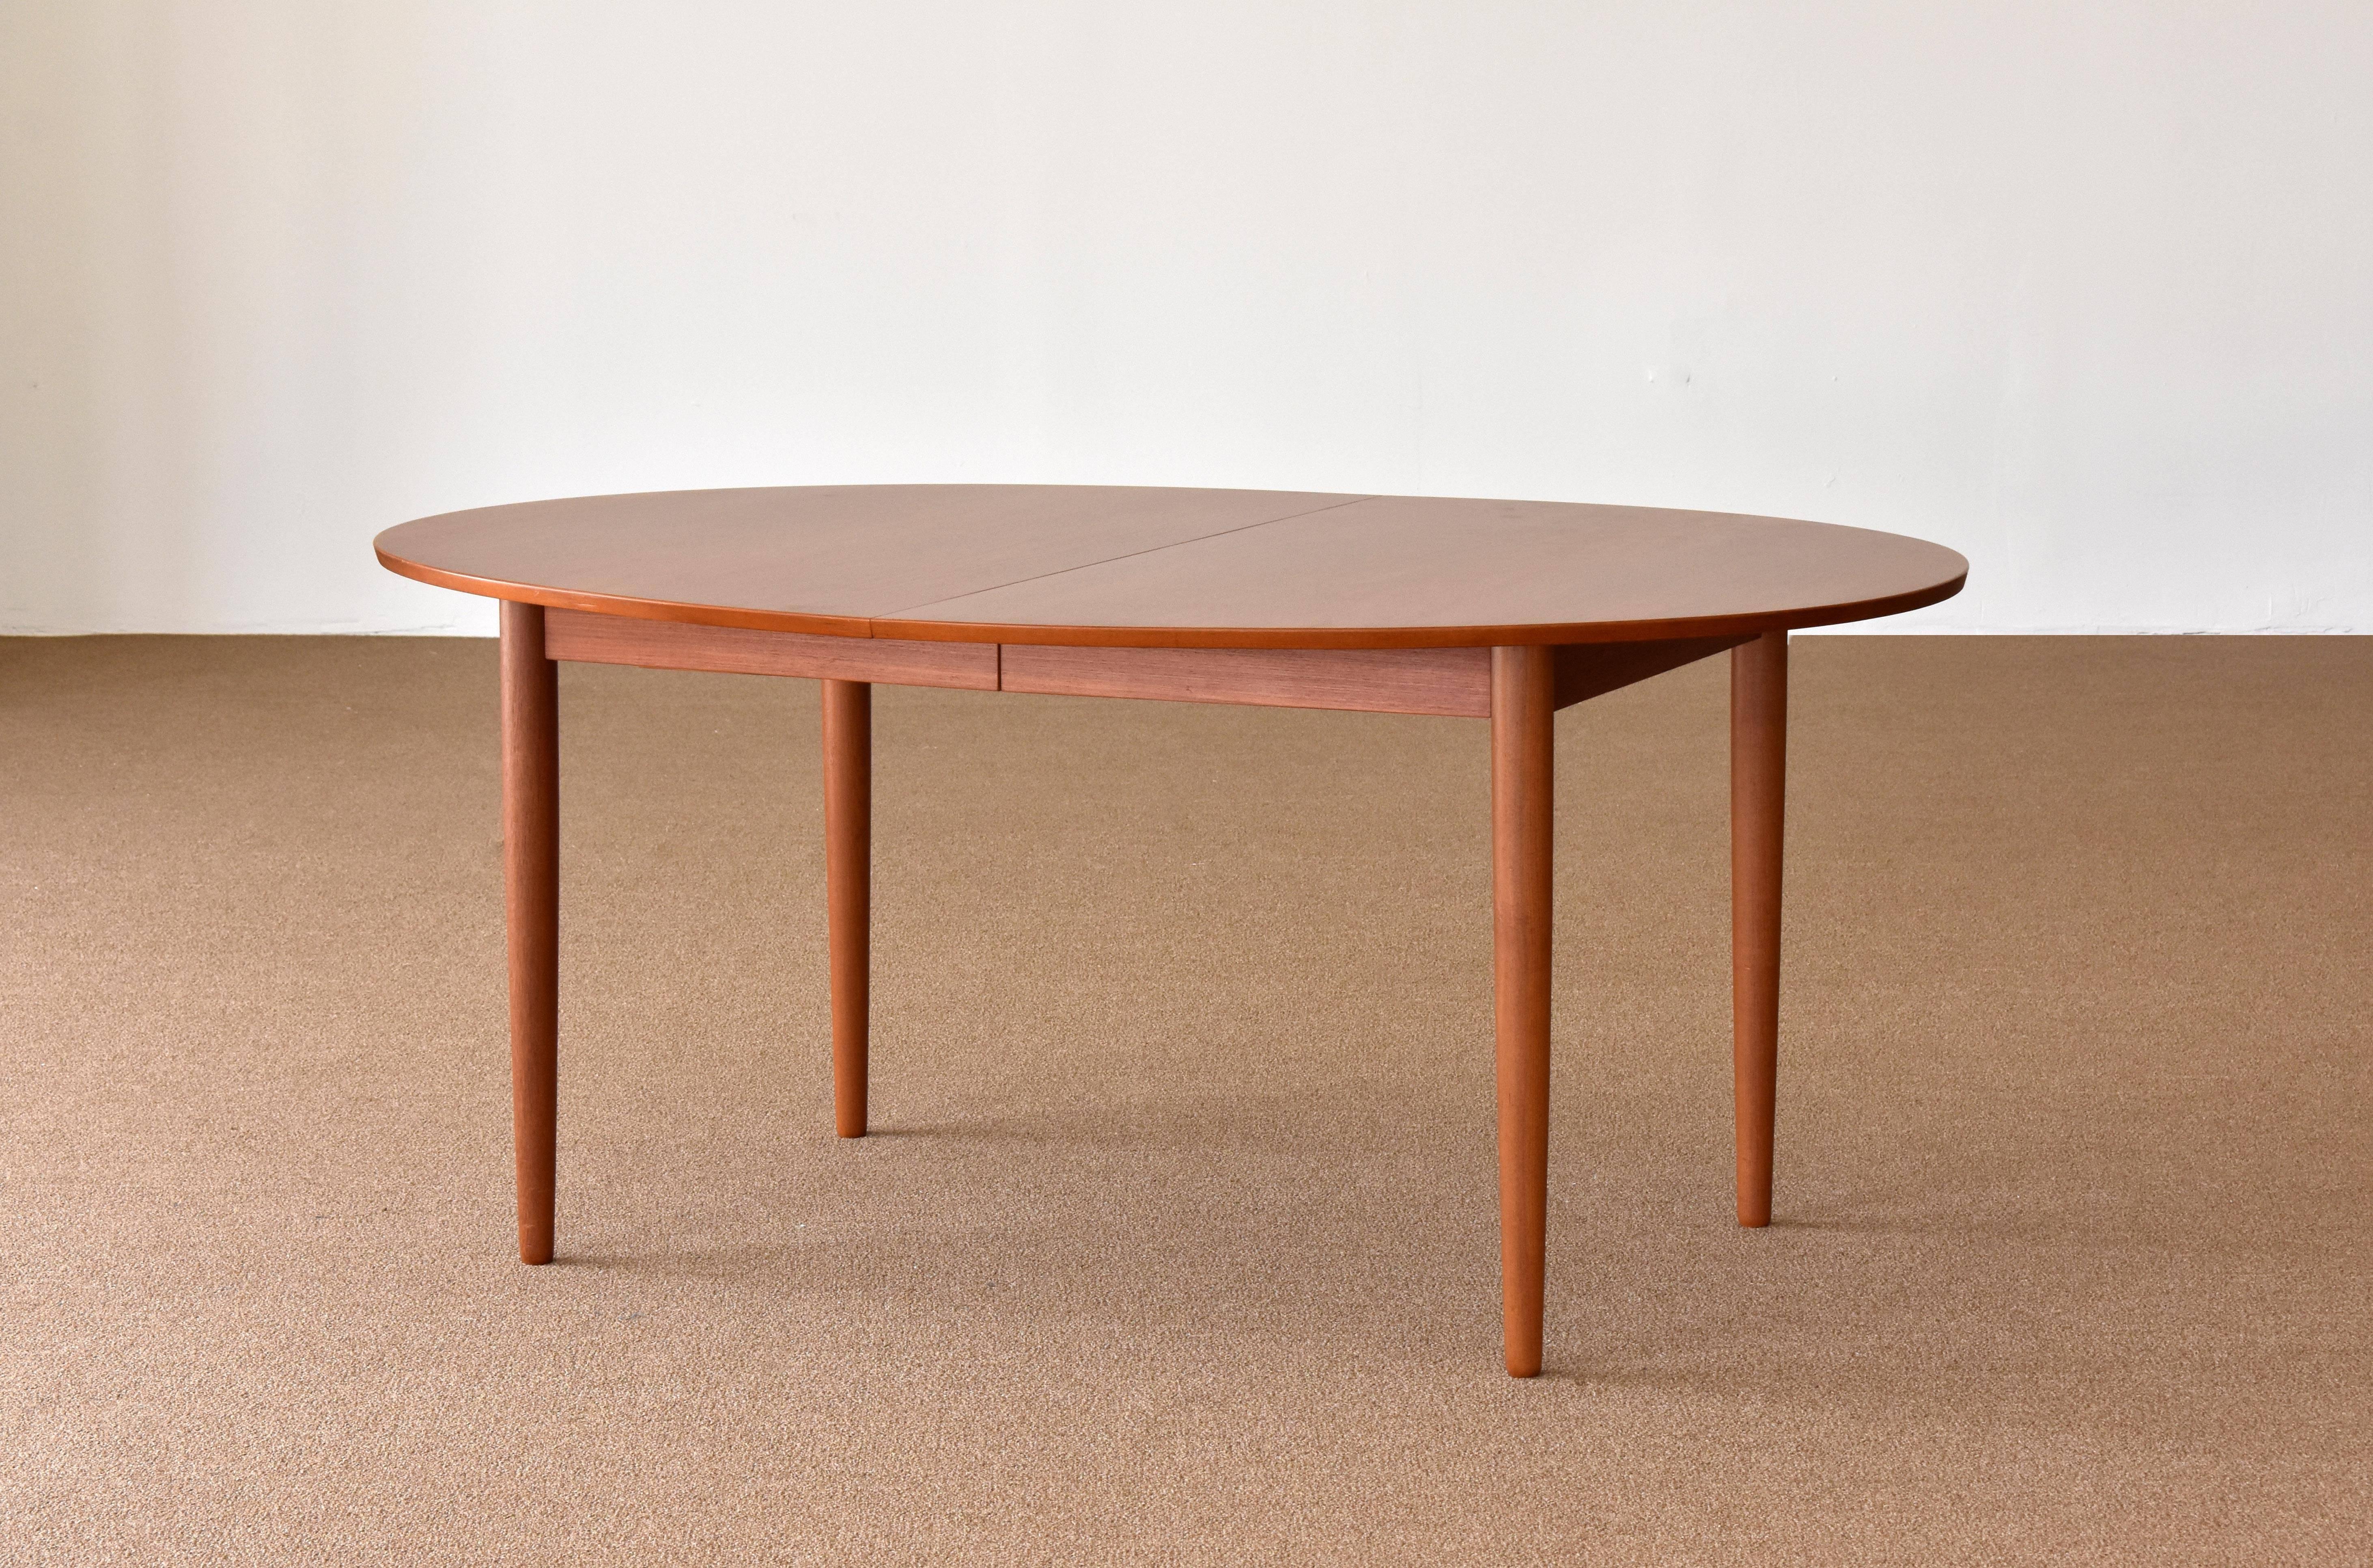 Scandinavian Modern Finn Juhl, Large Extendable Oval / Round Dining Table, Teak, Niels Vodder, 1955